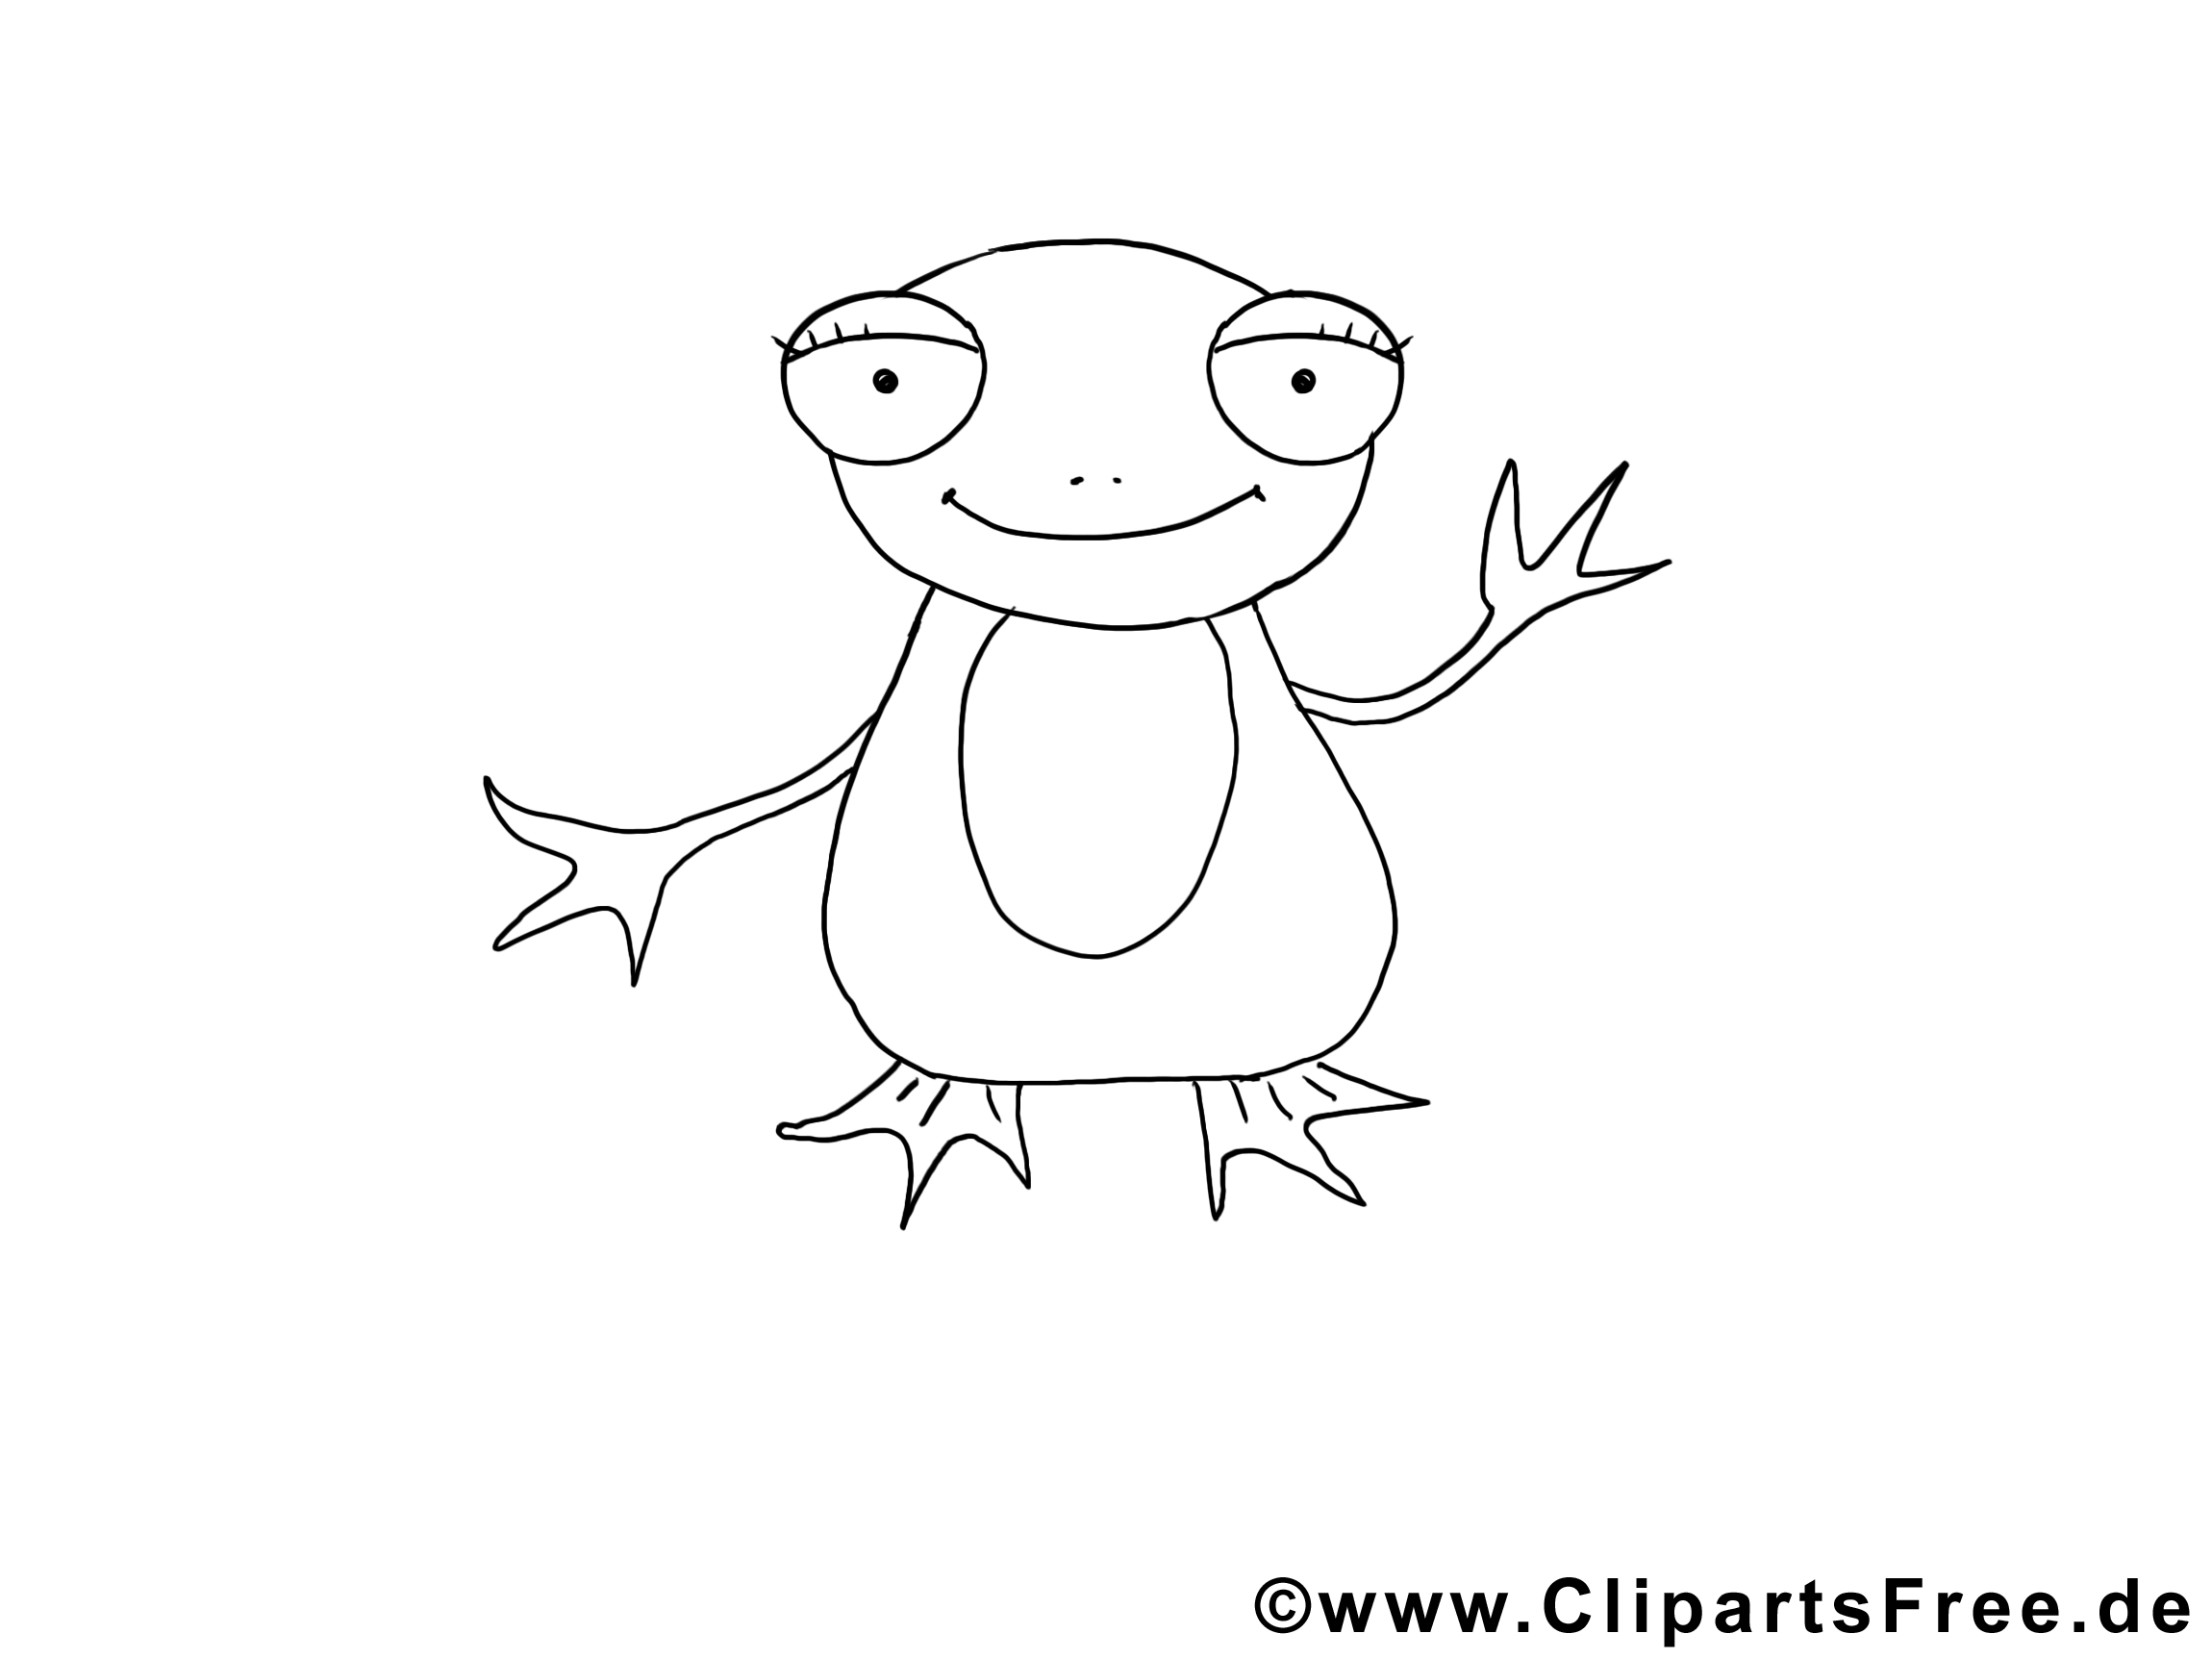 Clipart gratuit grenouille - Animal à colorier